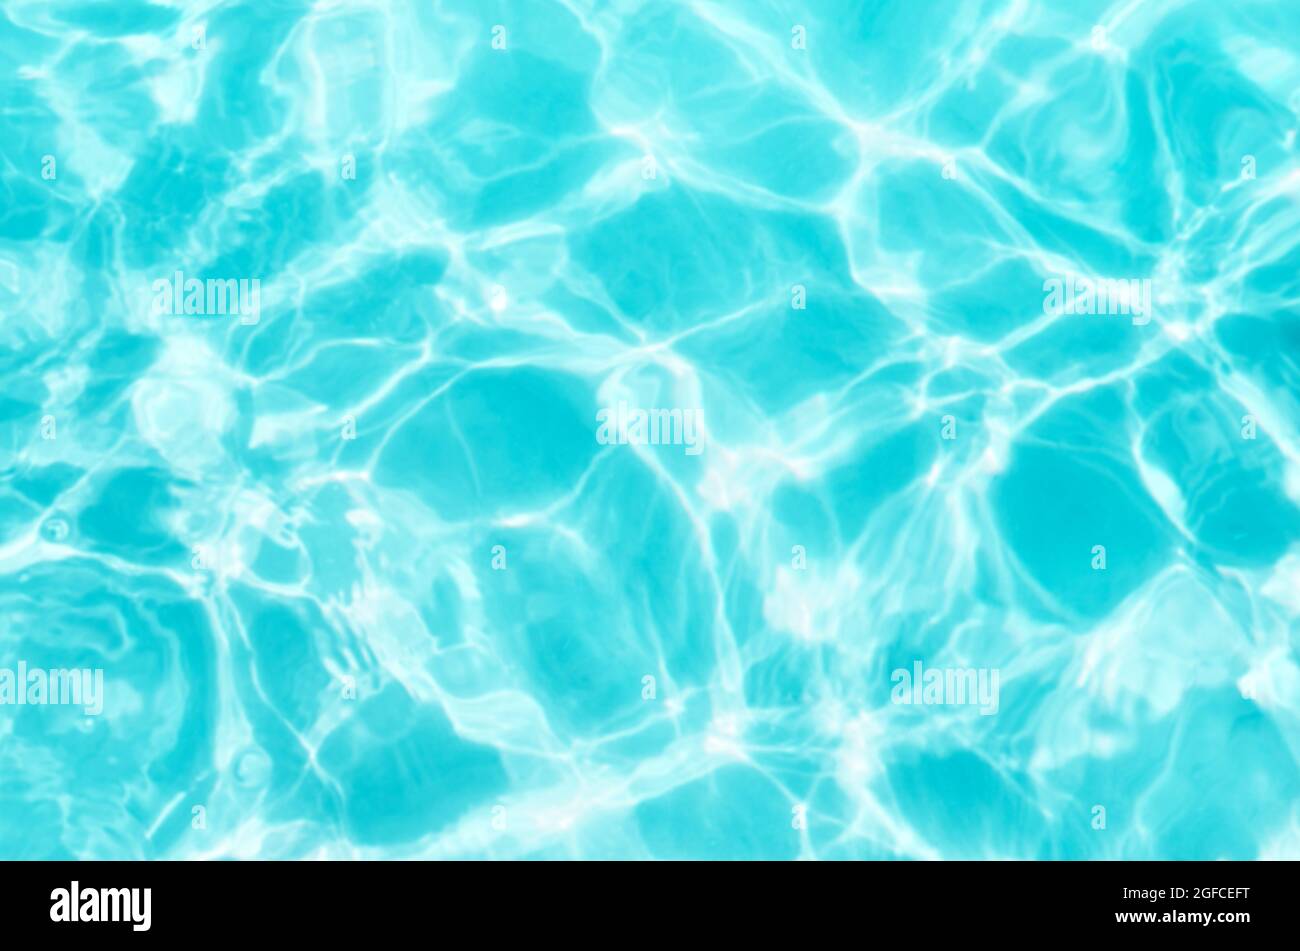 Verschwommenes Bild von seichtem Wasser mit Sonnenreflexionen, abstrakter Hintergrund der Natur. Stockfoto